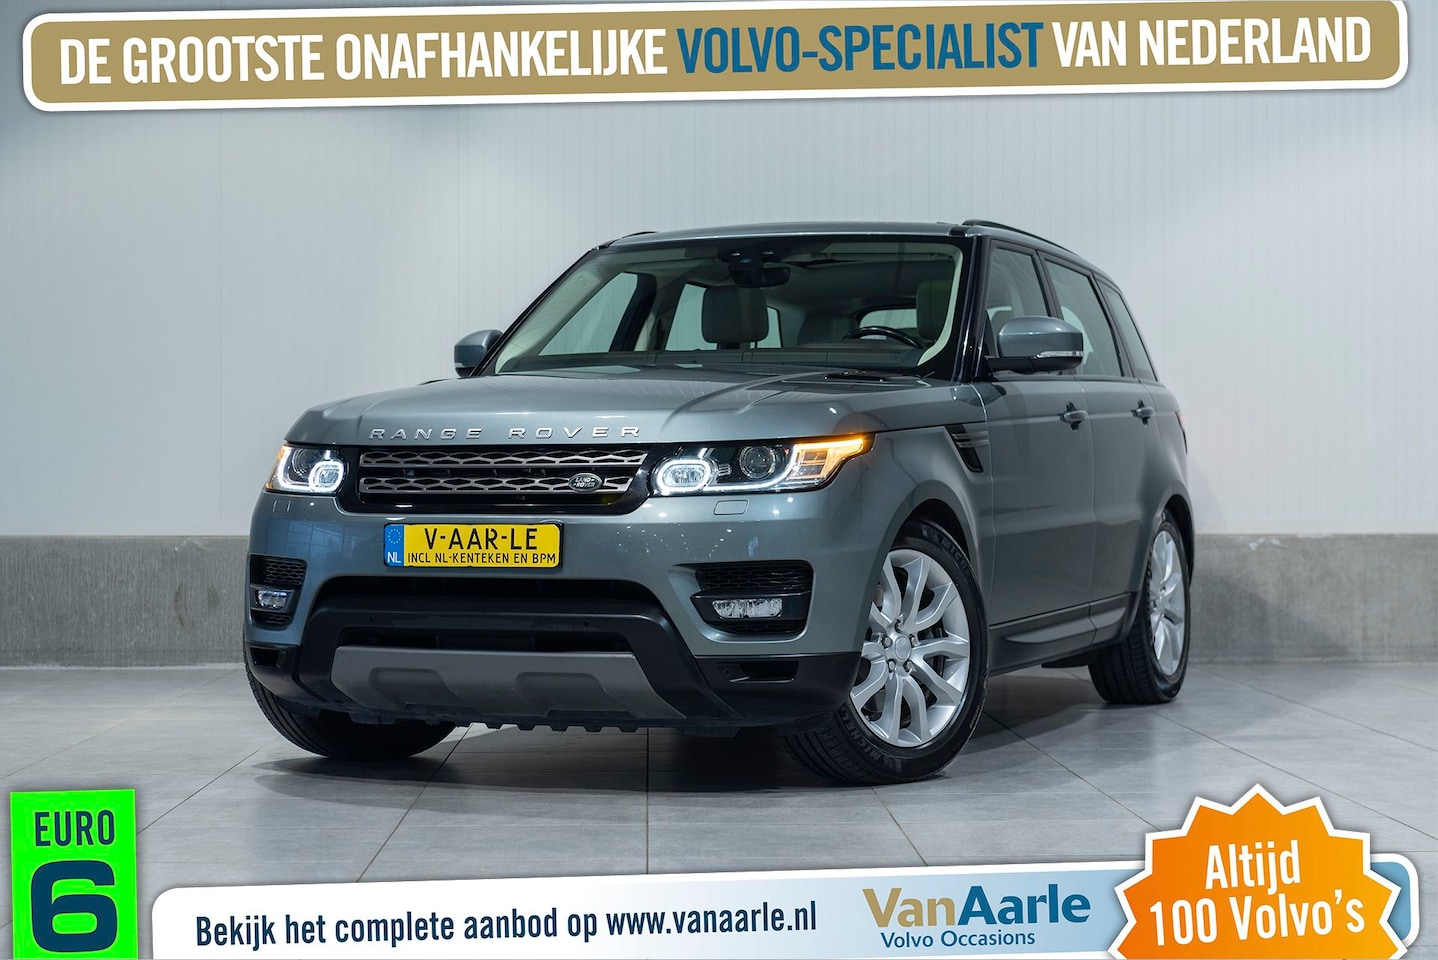 Land Rover Range Rover Sport - Aut. Euro6 3.0 TDV6 SE Leder Navigatie PERS.AUTO 249pk - AutoWereld.nl